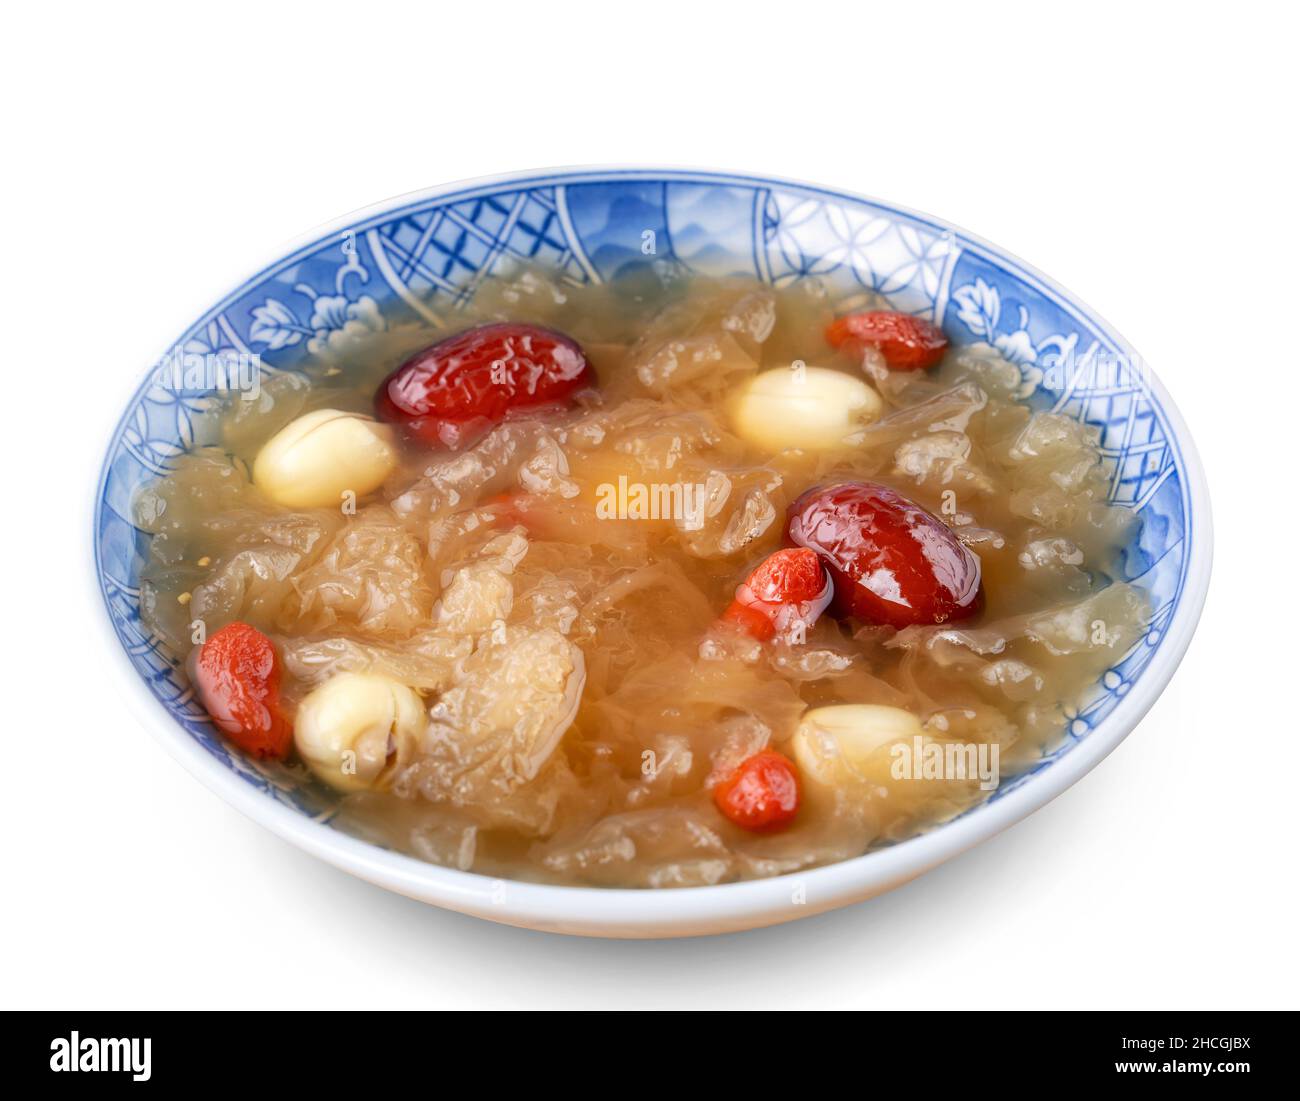 Gros plan de la soupe traditionnelle chinoise de champignons blancs de neige douce avec graines de lotus, dattes rouges (jujujube) et baies de carcajou (goji, gogyberry) isolées sur le bac blanc Banque D'Images